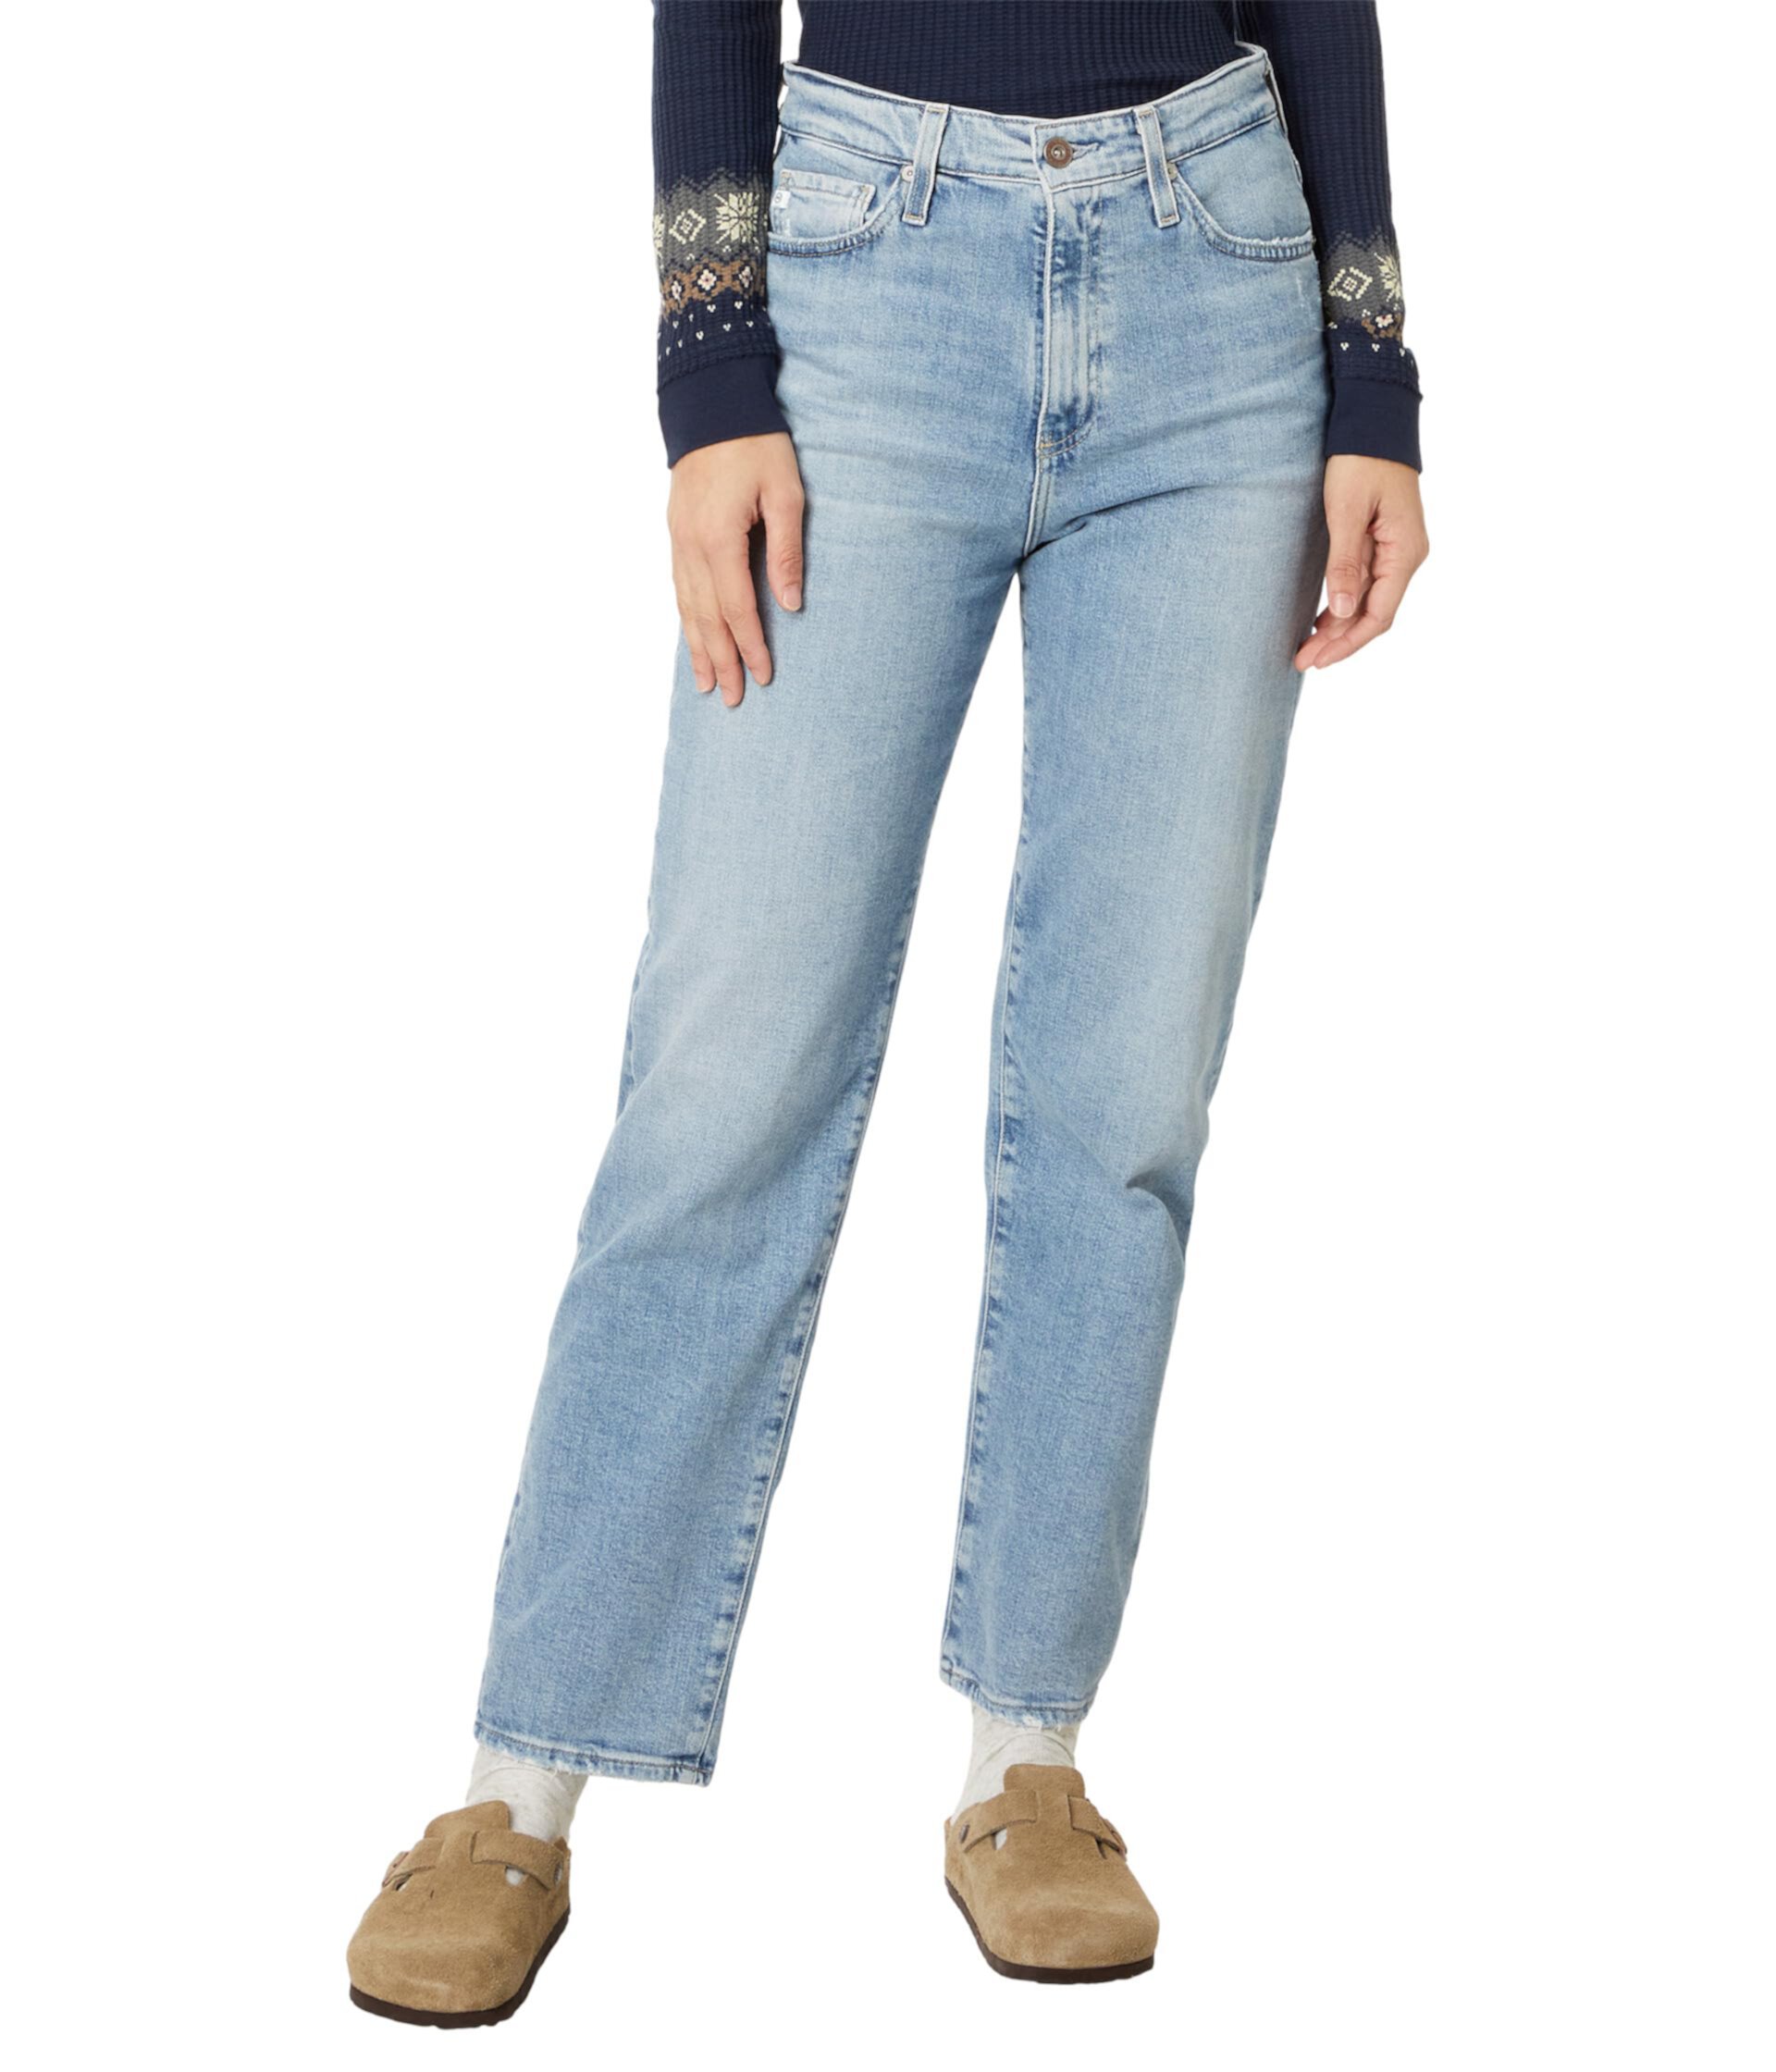 Прямые джинсы Rian с высокой посадкой в цвете Eclipsed AG Jeans